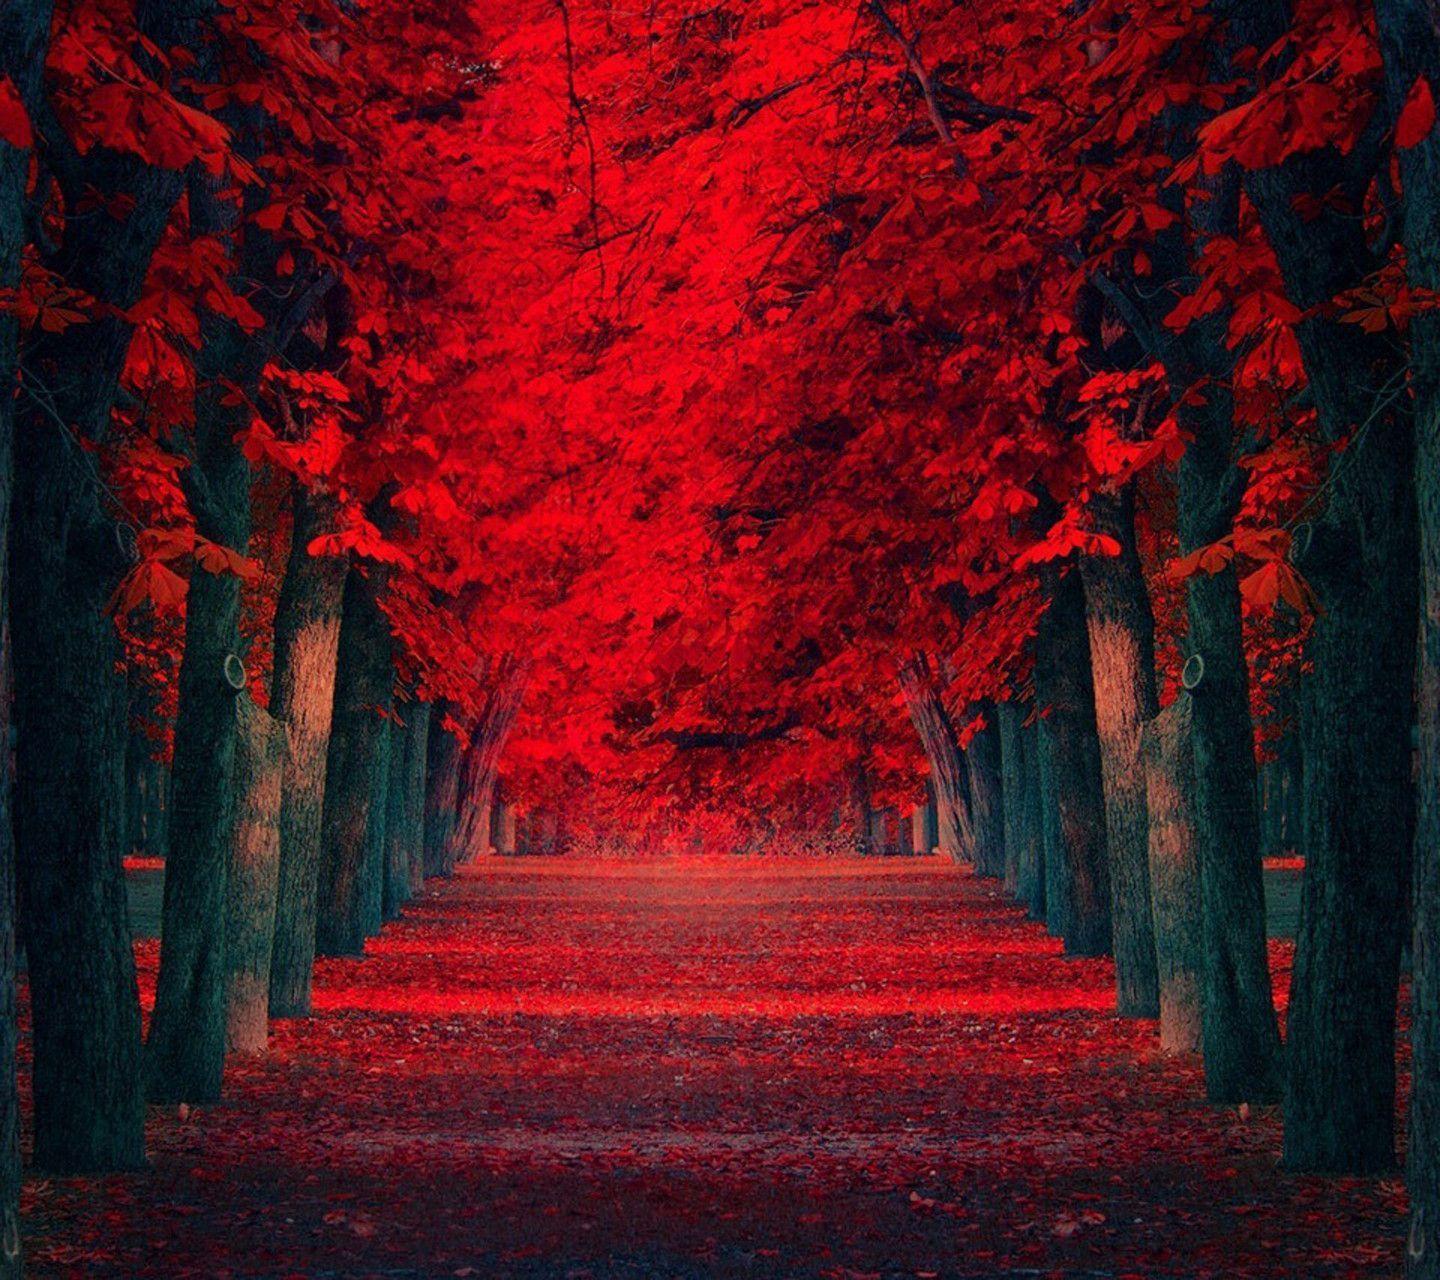 Thiên nhiên đỏ rực chắc chắn sẽ khiến bạn trầm trồ và muốn đắm chìm vào hình ảnh đó suốt cả ngày. Hãy tạo cho mình một không gian yên tĩnh và đầy cảm hứng với hình nền thiên nhiên đỏ đầy cuốn hút này nhé!